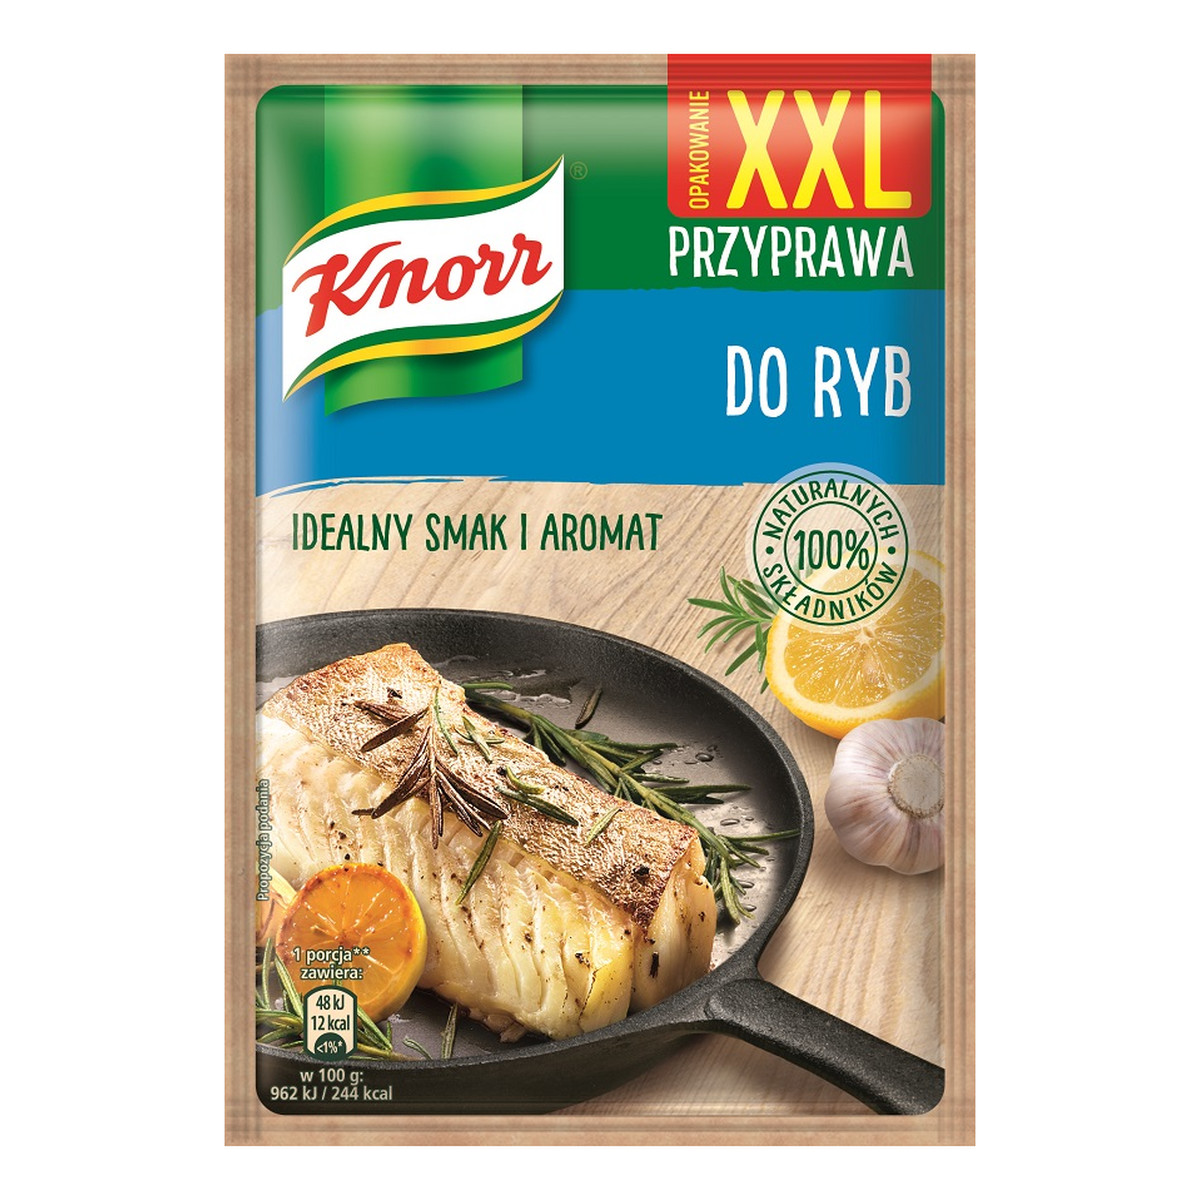 Knorr Przyprawa do ryb XXL 75g